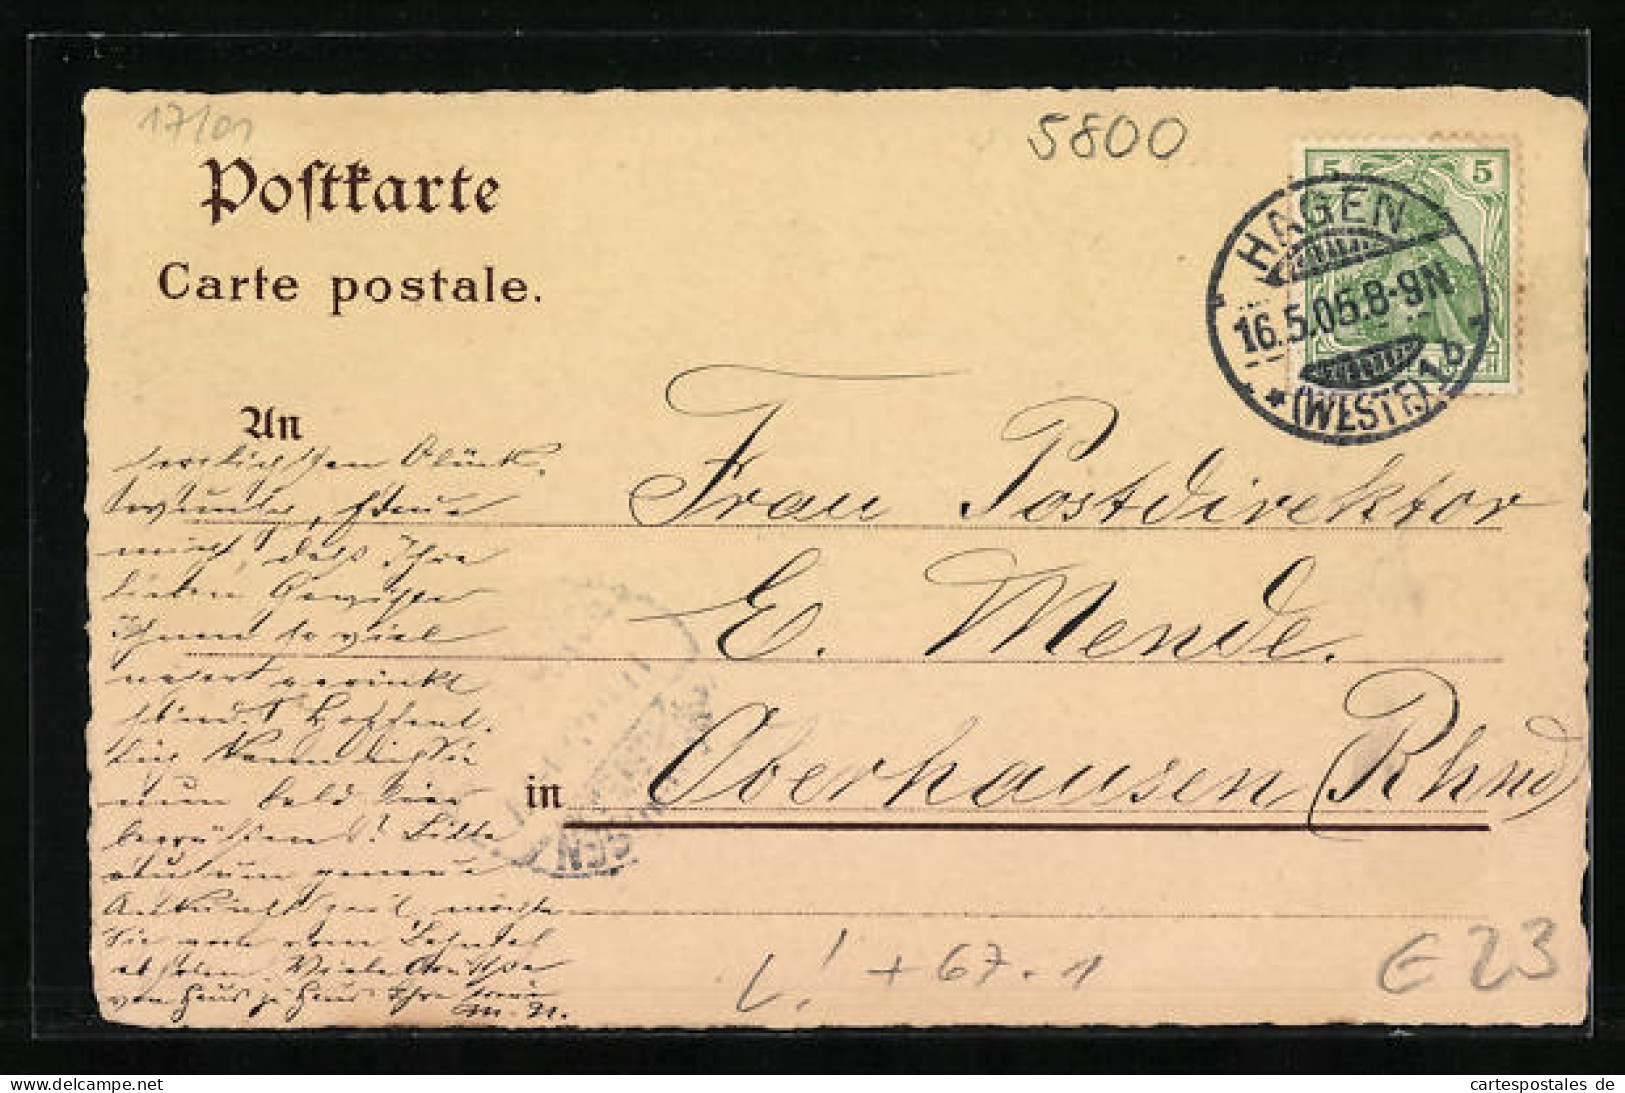 Lithographie Hagen I. W., Erste Provinziale Kochkunst- Und Fachgewerbliche Ausstellung 1905, Hauptgebäude, Rathaus  - Ausstellungen